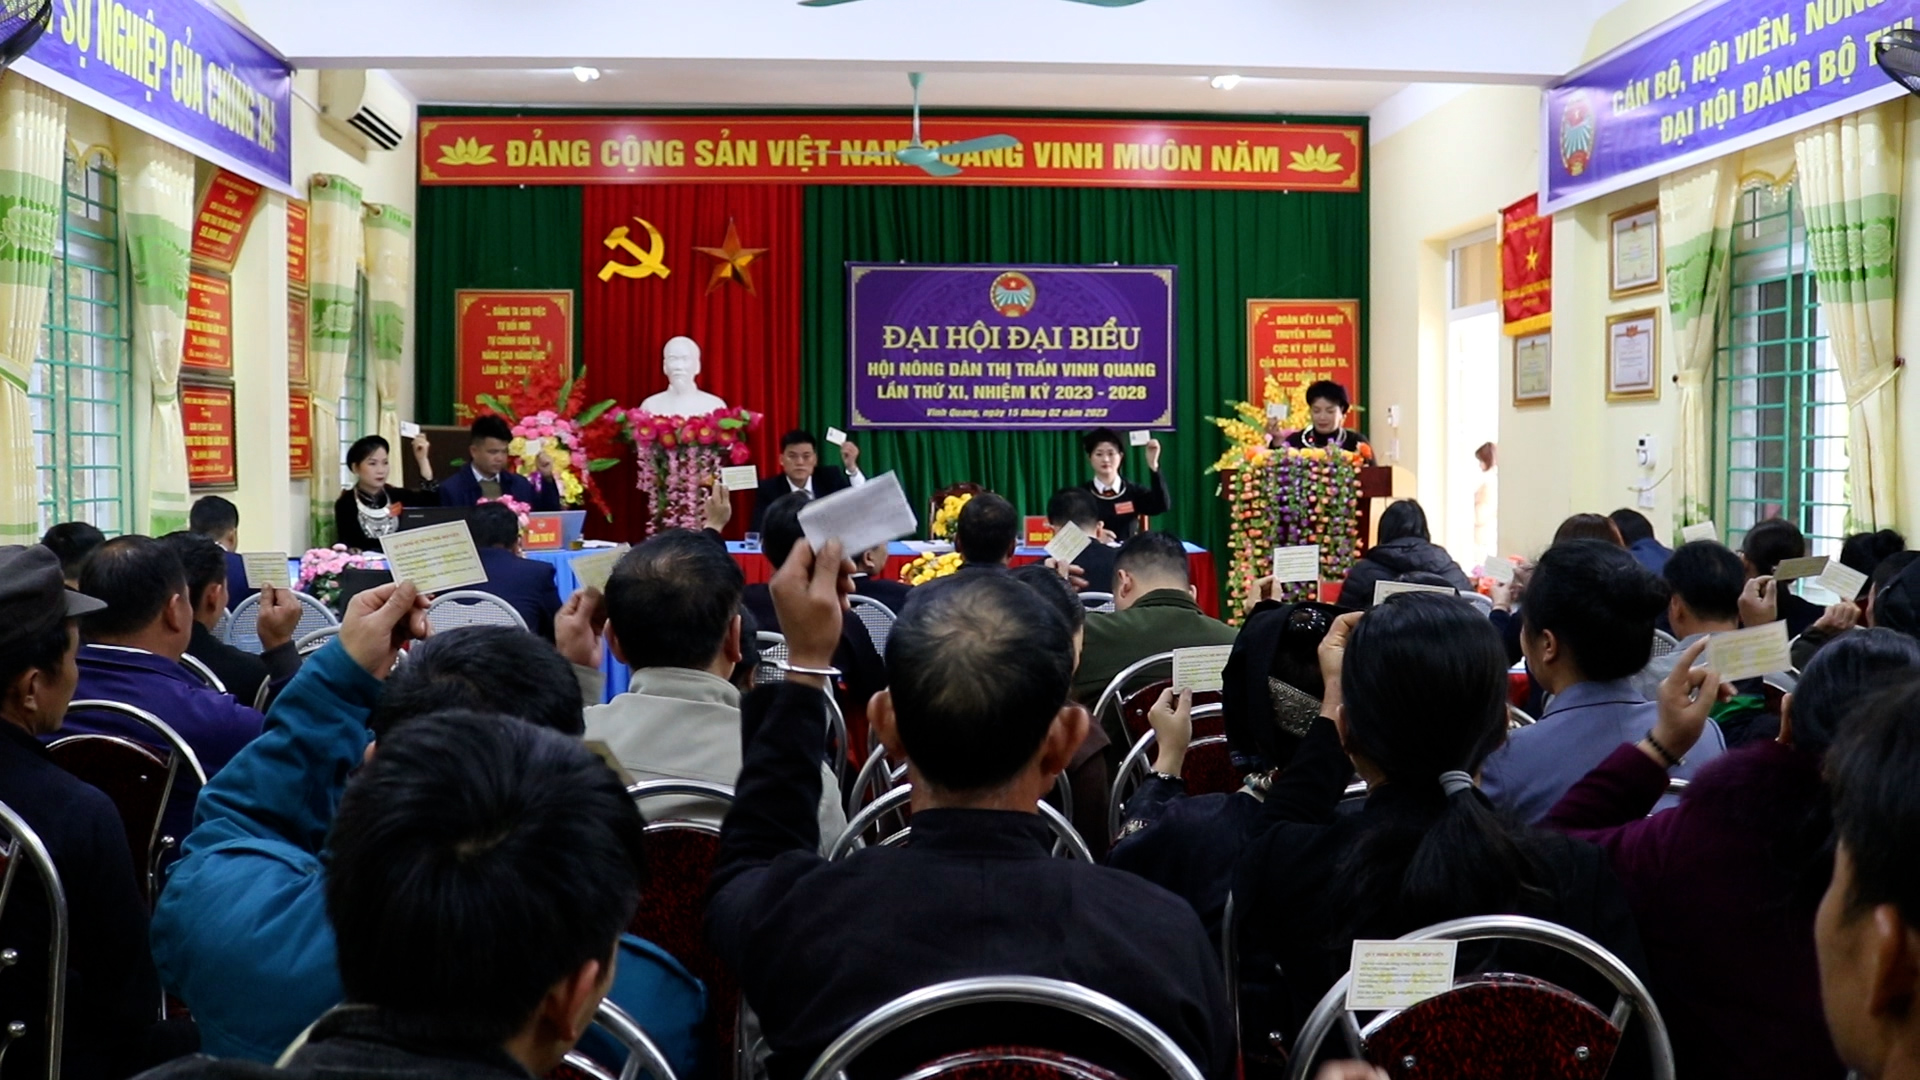 Đại hội Đại biểu Hội Nông dân thị trấn Vinh Quang